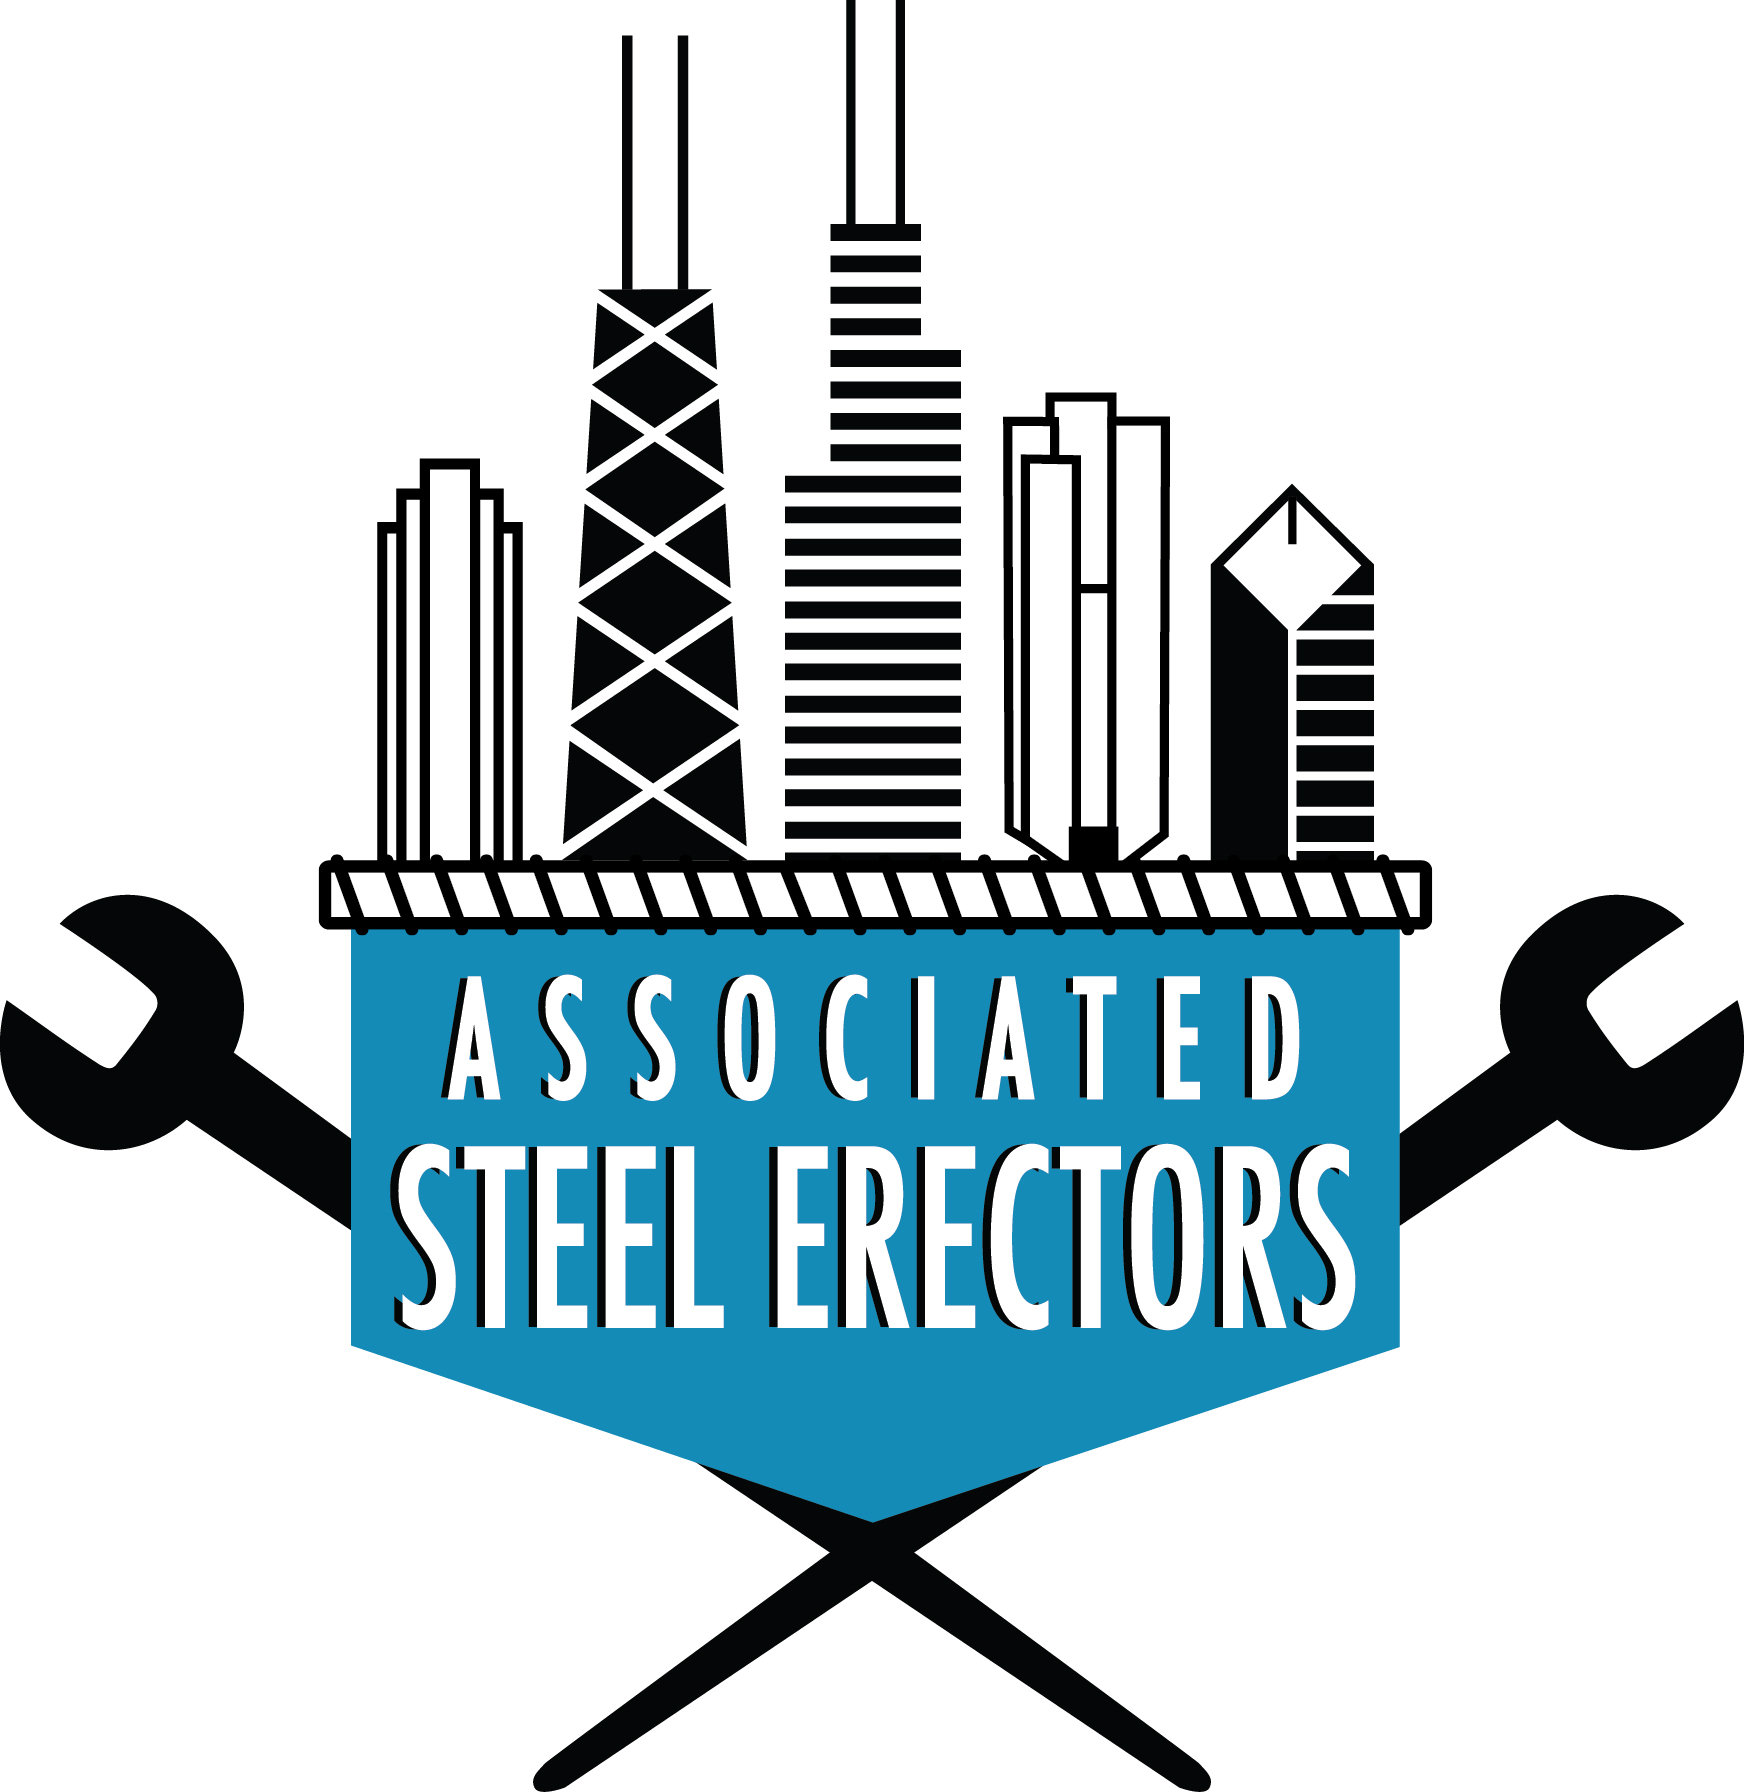 Associated Steel Erectors